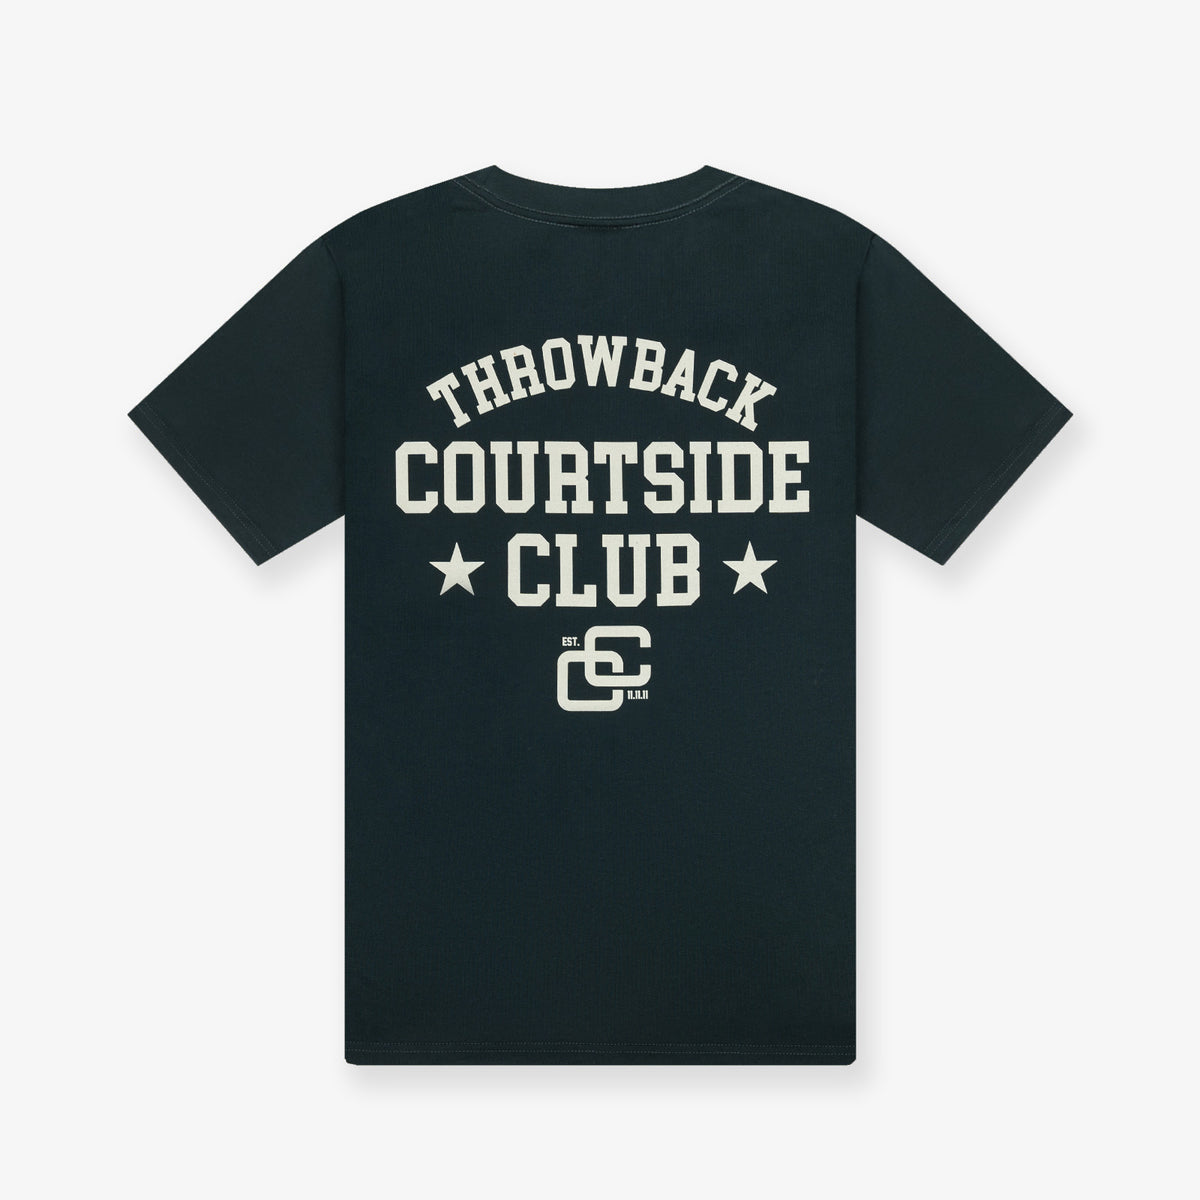 Courtside Club Tee - Racing